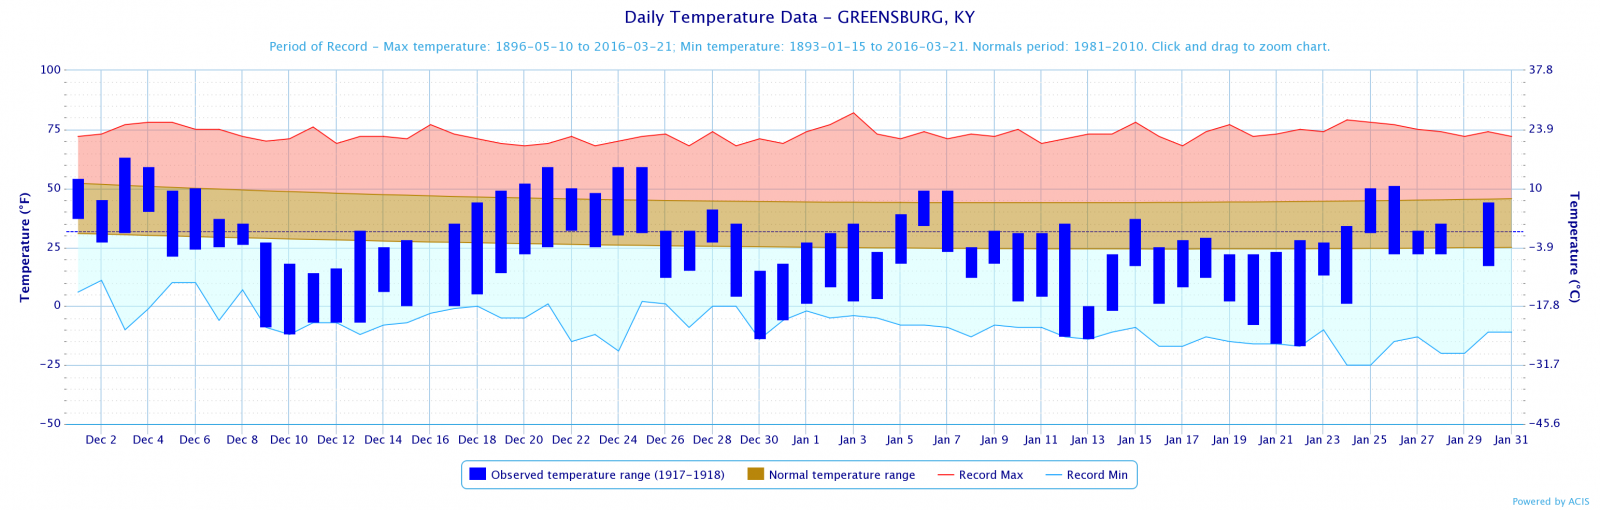 Temperature Plot for Greensburg, December 1917-1918